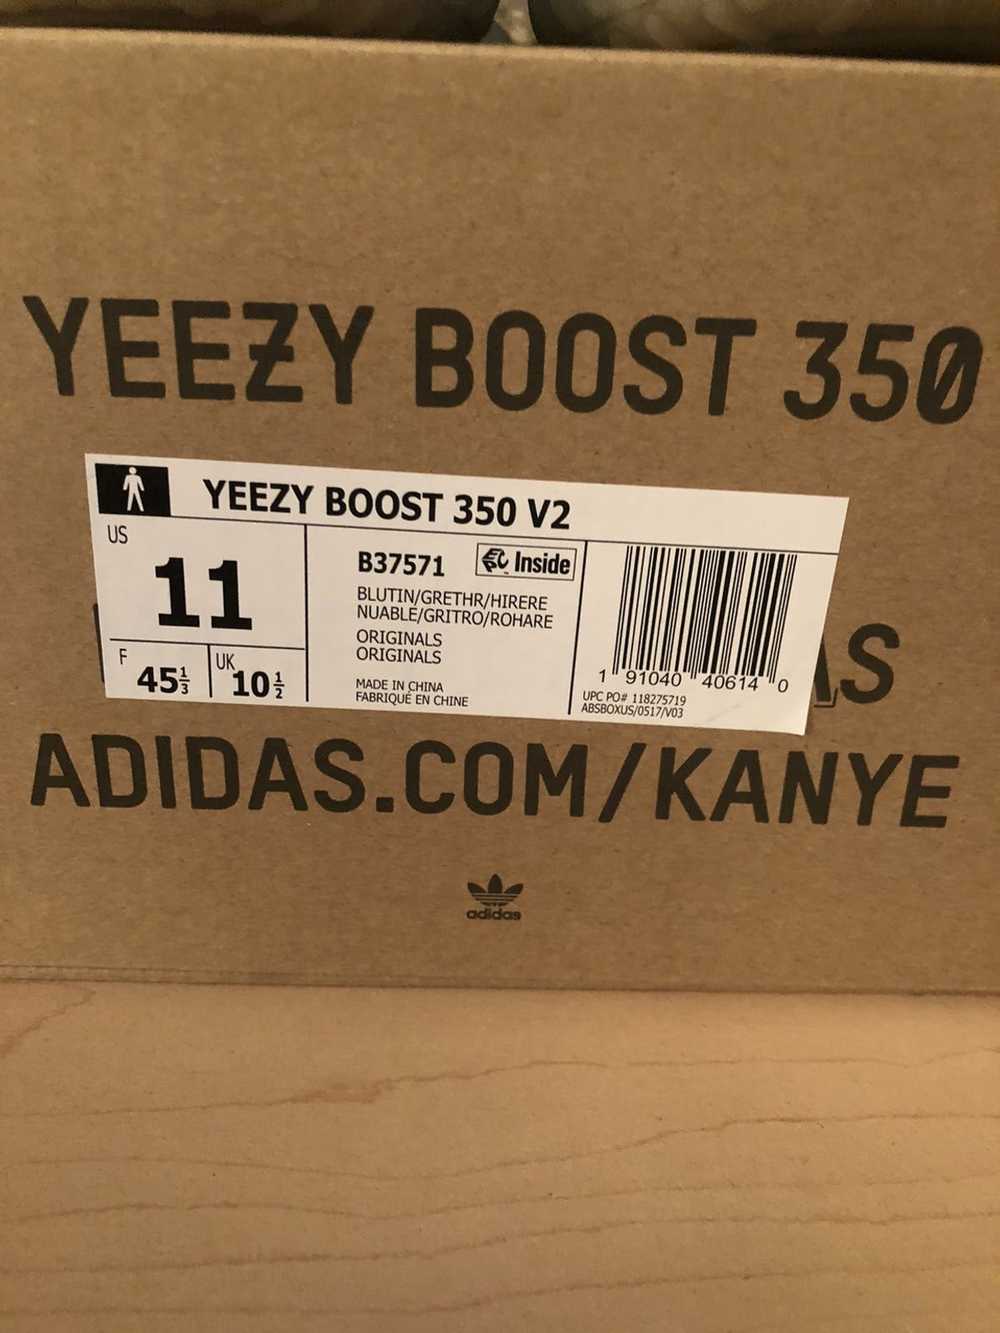 Adidas × Kanye West Yeezy Boost 350 V2 Blue Tint - image 7